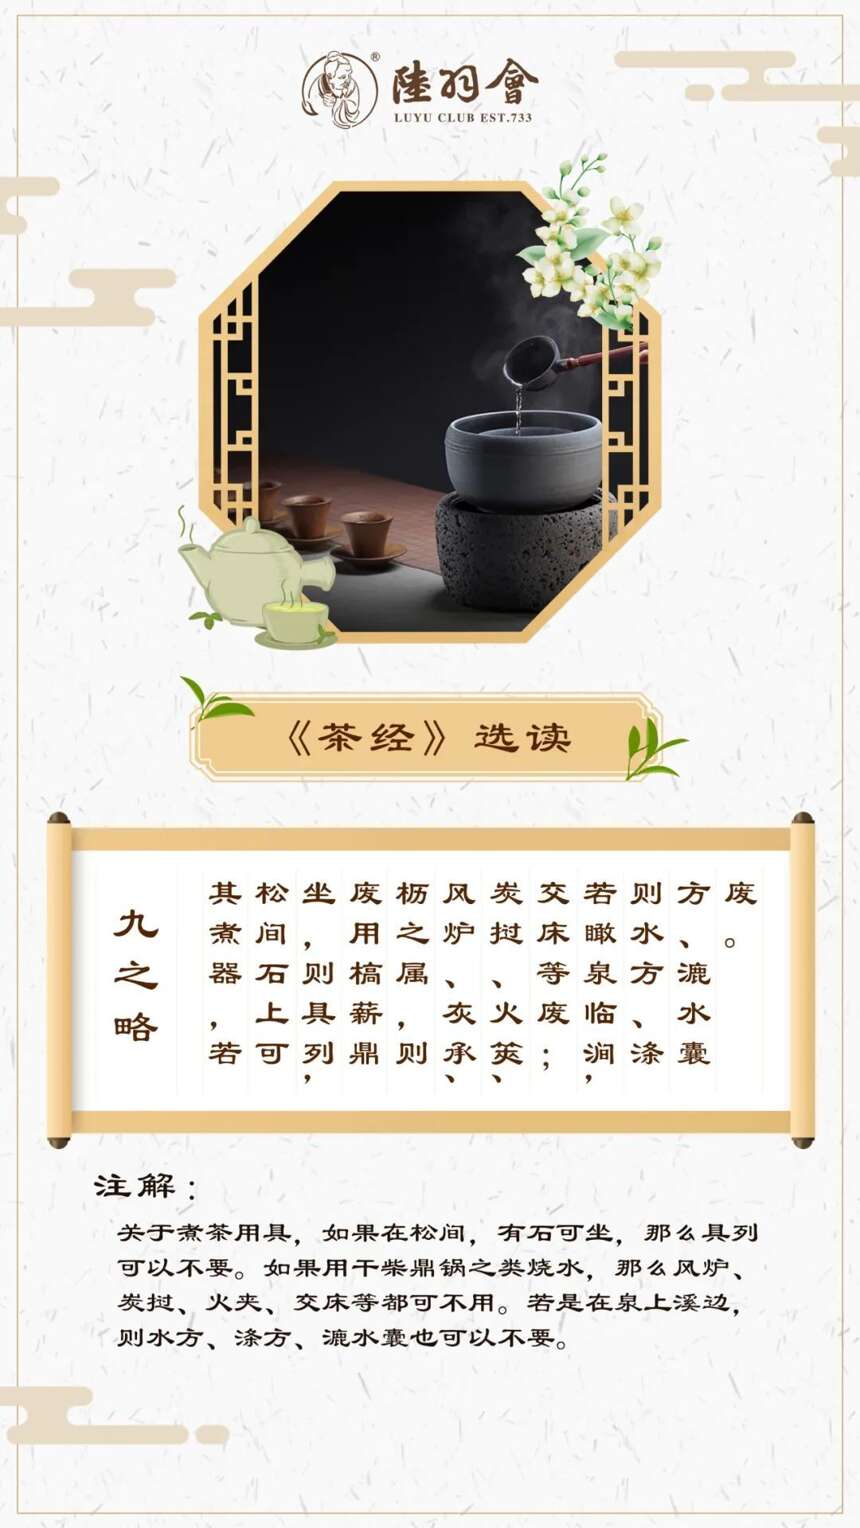 陆羽茶交所分享丨陆羽《茶经》九之略 其煮器，若松间石上可坐